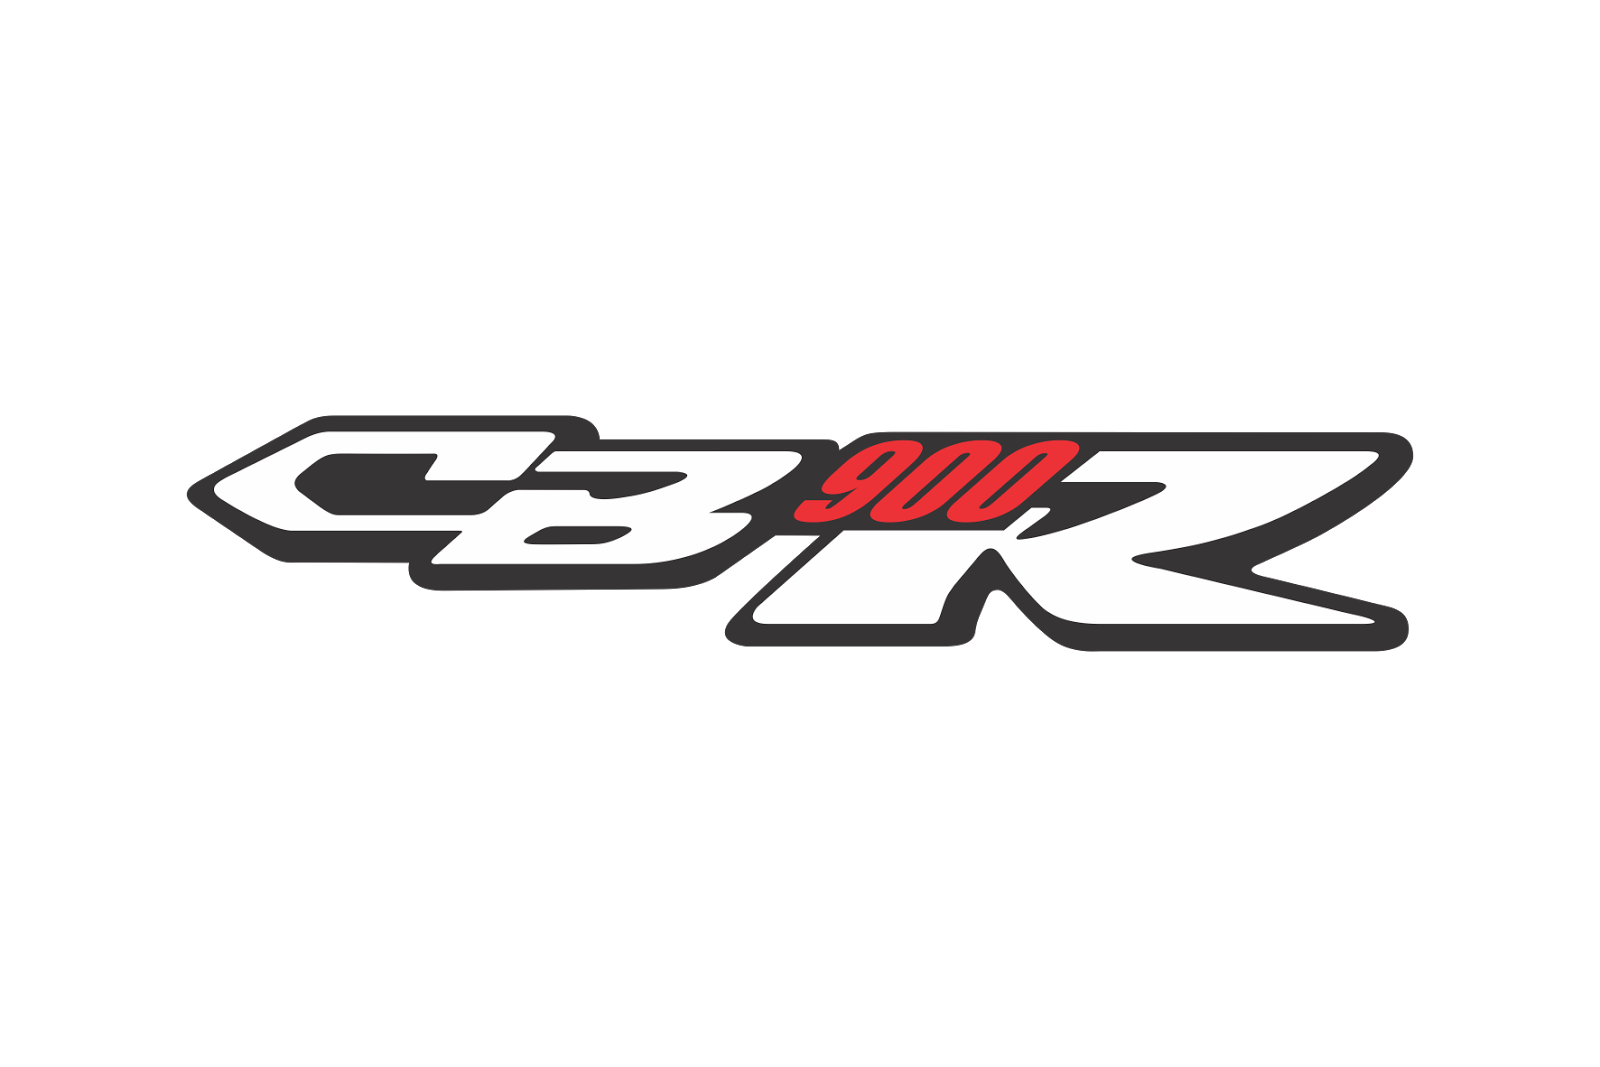 Cbr scripts. Honda CBR logo. Honda CBR 1100 логотип. Хонда СБР 1100 лого. Наклейки Honda cbr1000f.